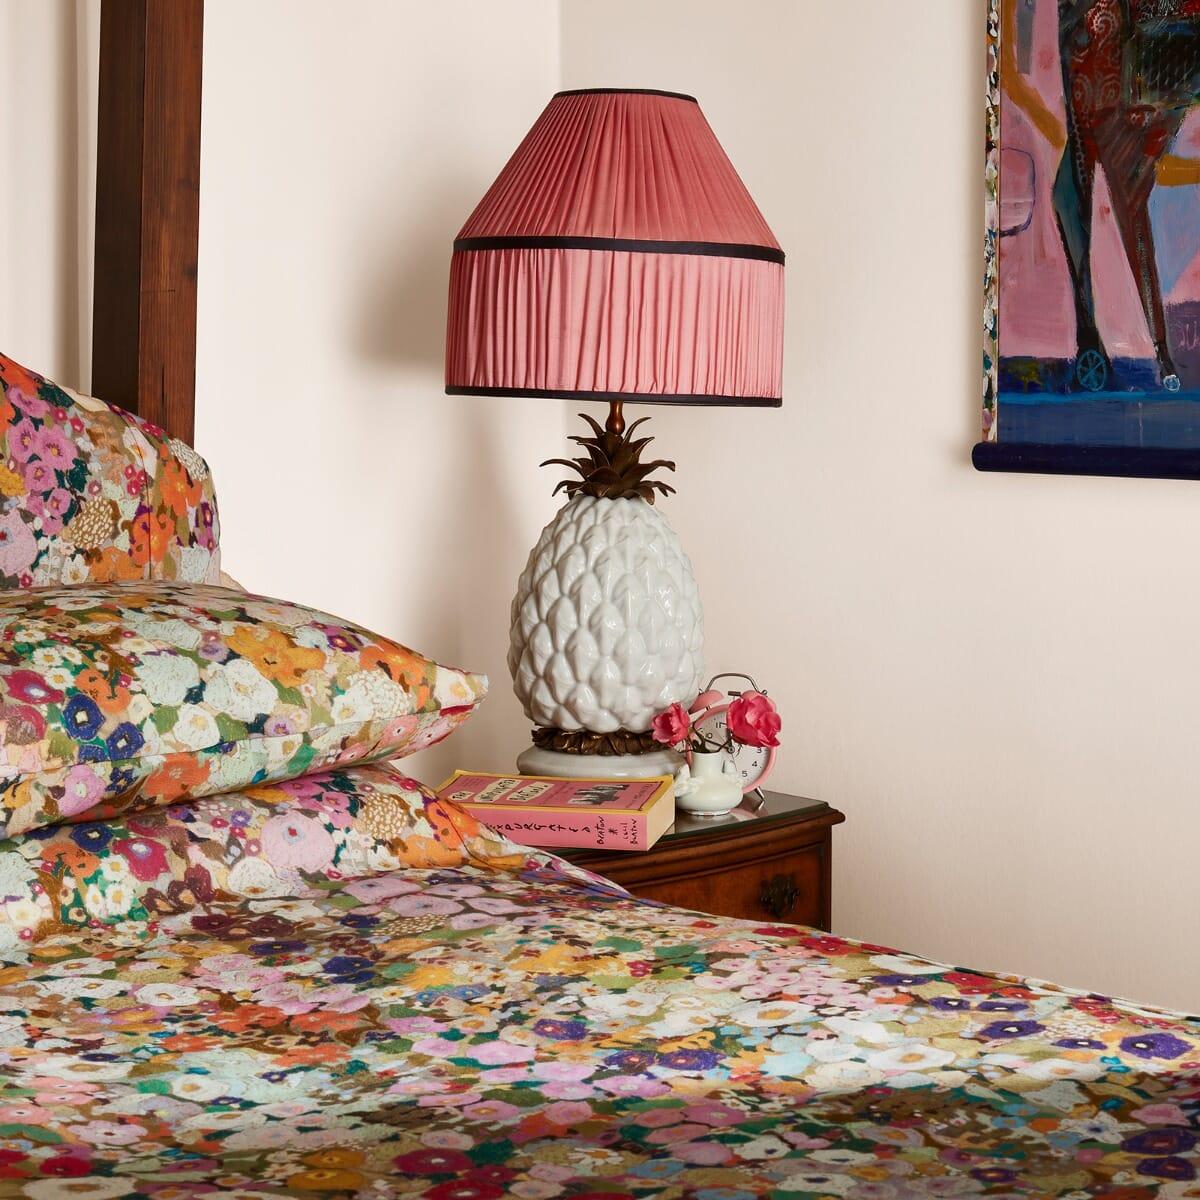 HOLLYHOCKS erinnert an die üppigen Farben und die leuchtende Fröhlichkeit in Gustav Klimts Gemälden von Blumengärten und wurde von der amerikanischen Künstlerin Kerry Simmons speziell für House of Hackney entworfen, basierend auf ihrem eigenen